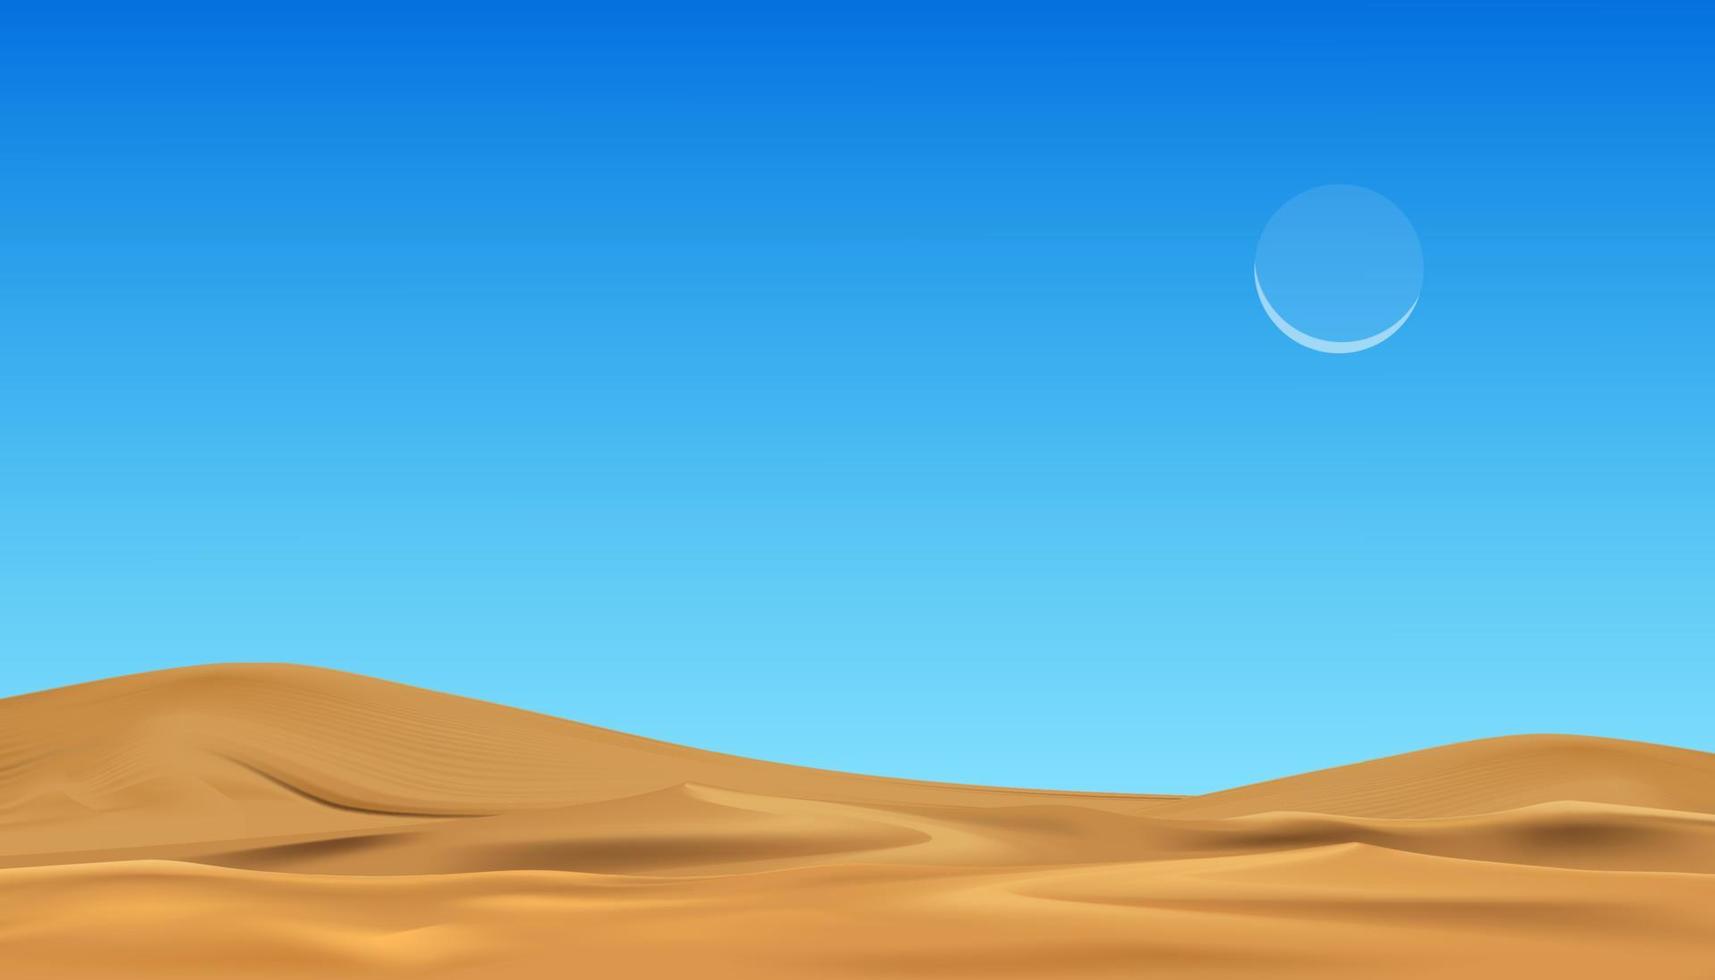 arena playa y azul cielo, desierto paisaje arena dunas con creciente Luna en claro cielo, vector islámicos, musulmanes religión mes de generoso Ramadán, nuevo luna, oración tiempo.eid mubarak, eid Alabama adha, eid Alabama fitr